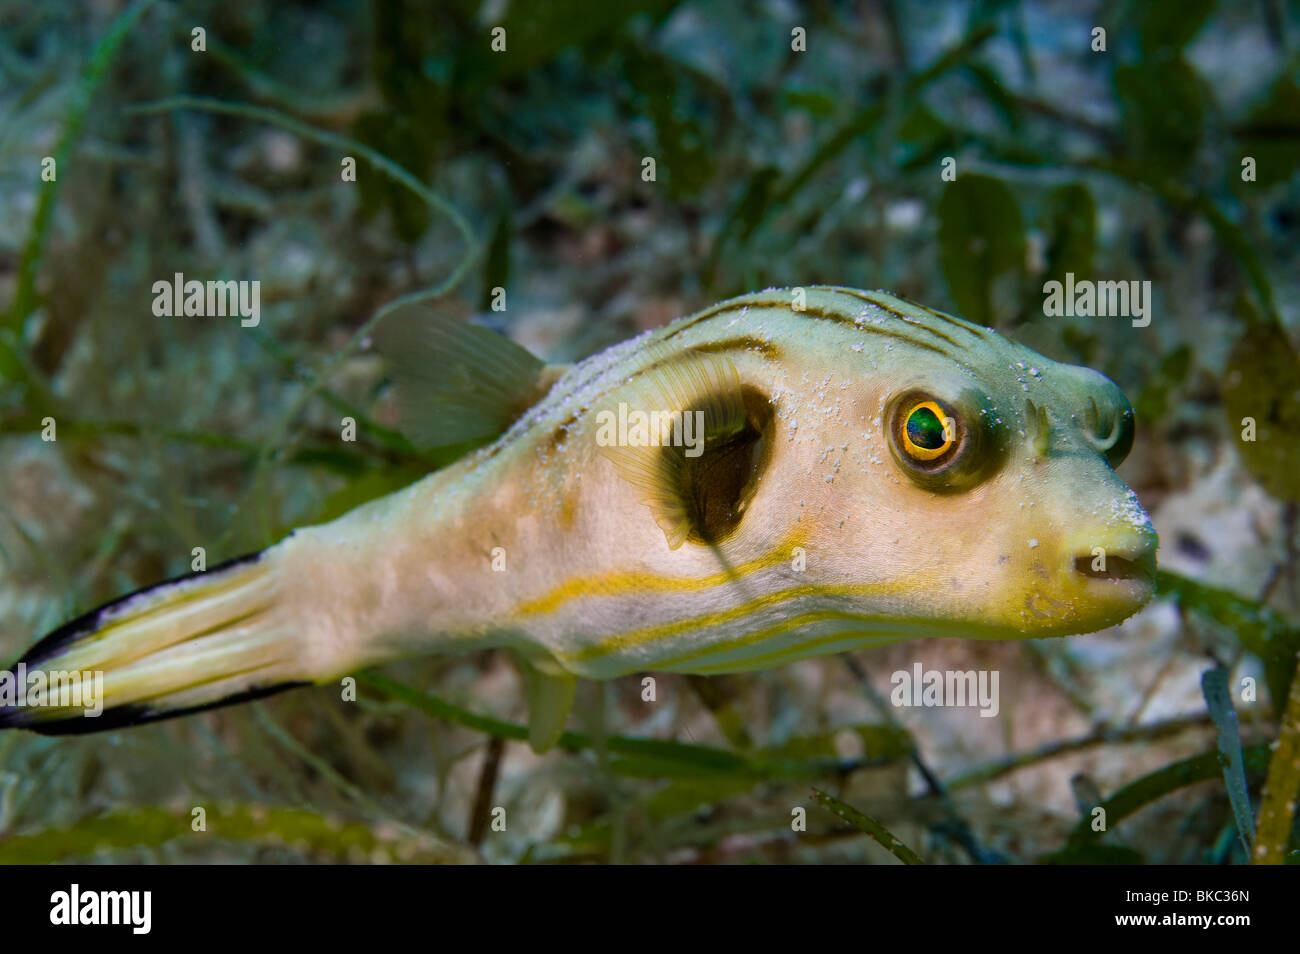 Bordée de rayures étroites poisson-globe Arothron manilensis sauvage faune poissons dans les herbiers de l'herbe verte de la mer portrait de grands yeux big e Banque D'Images